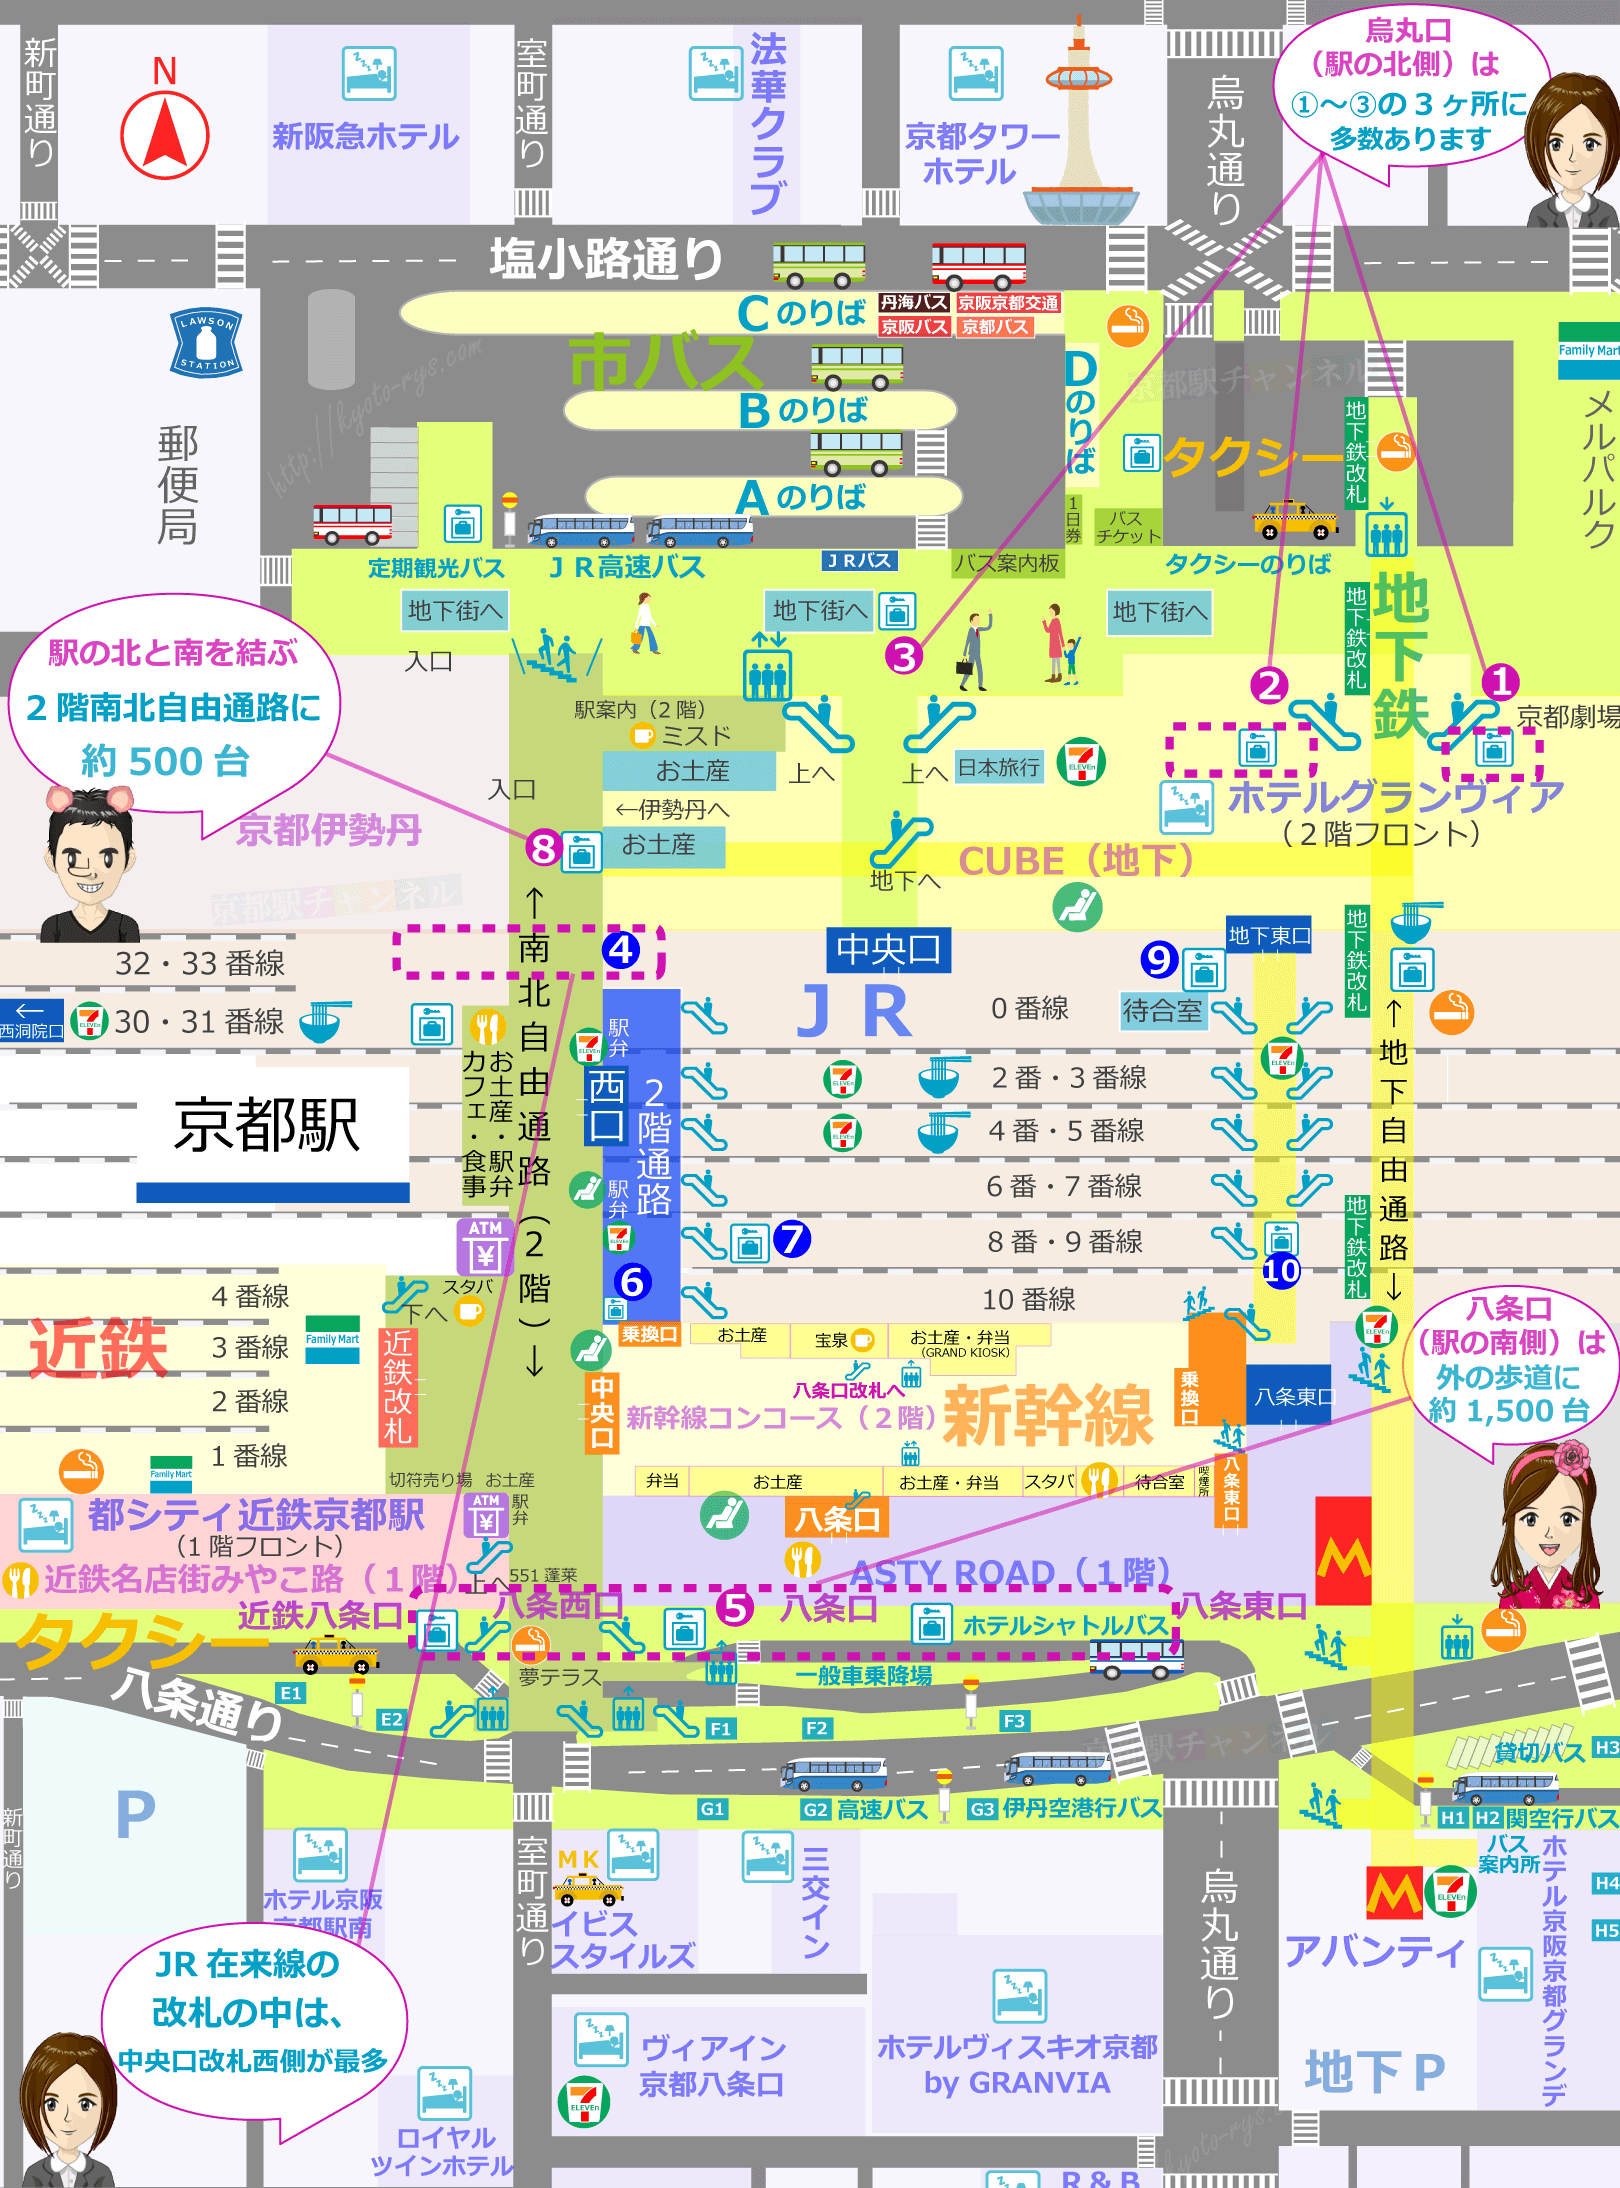 京都駅全体のコインロッカーの地図